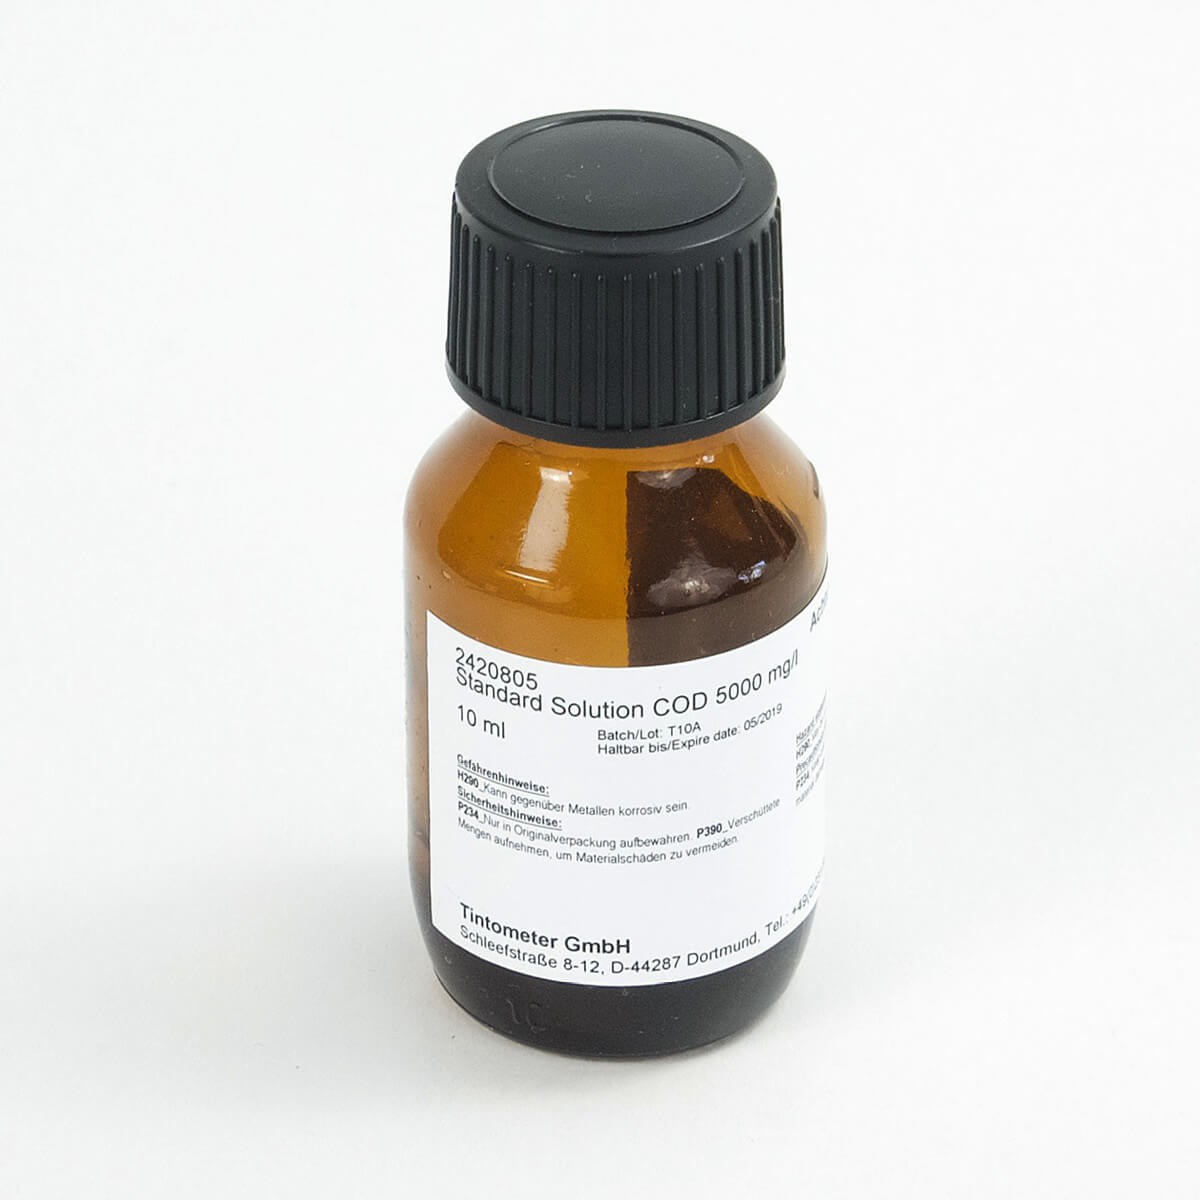 2420805 标准溶液 COD 5000 mg/l